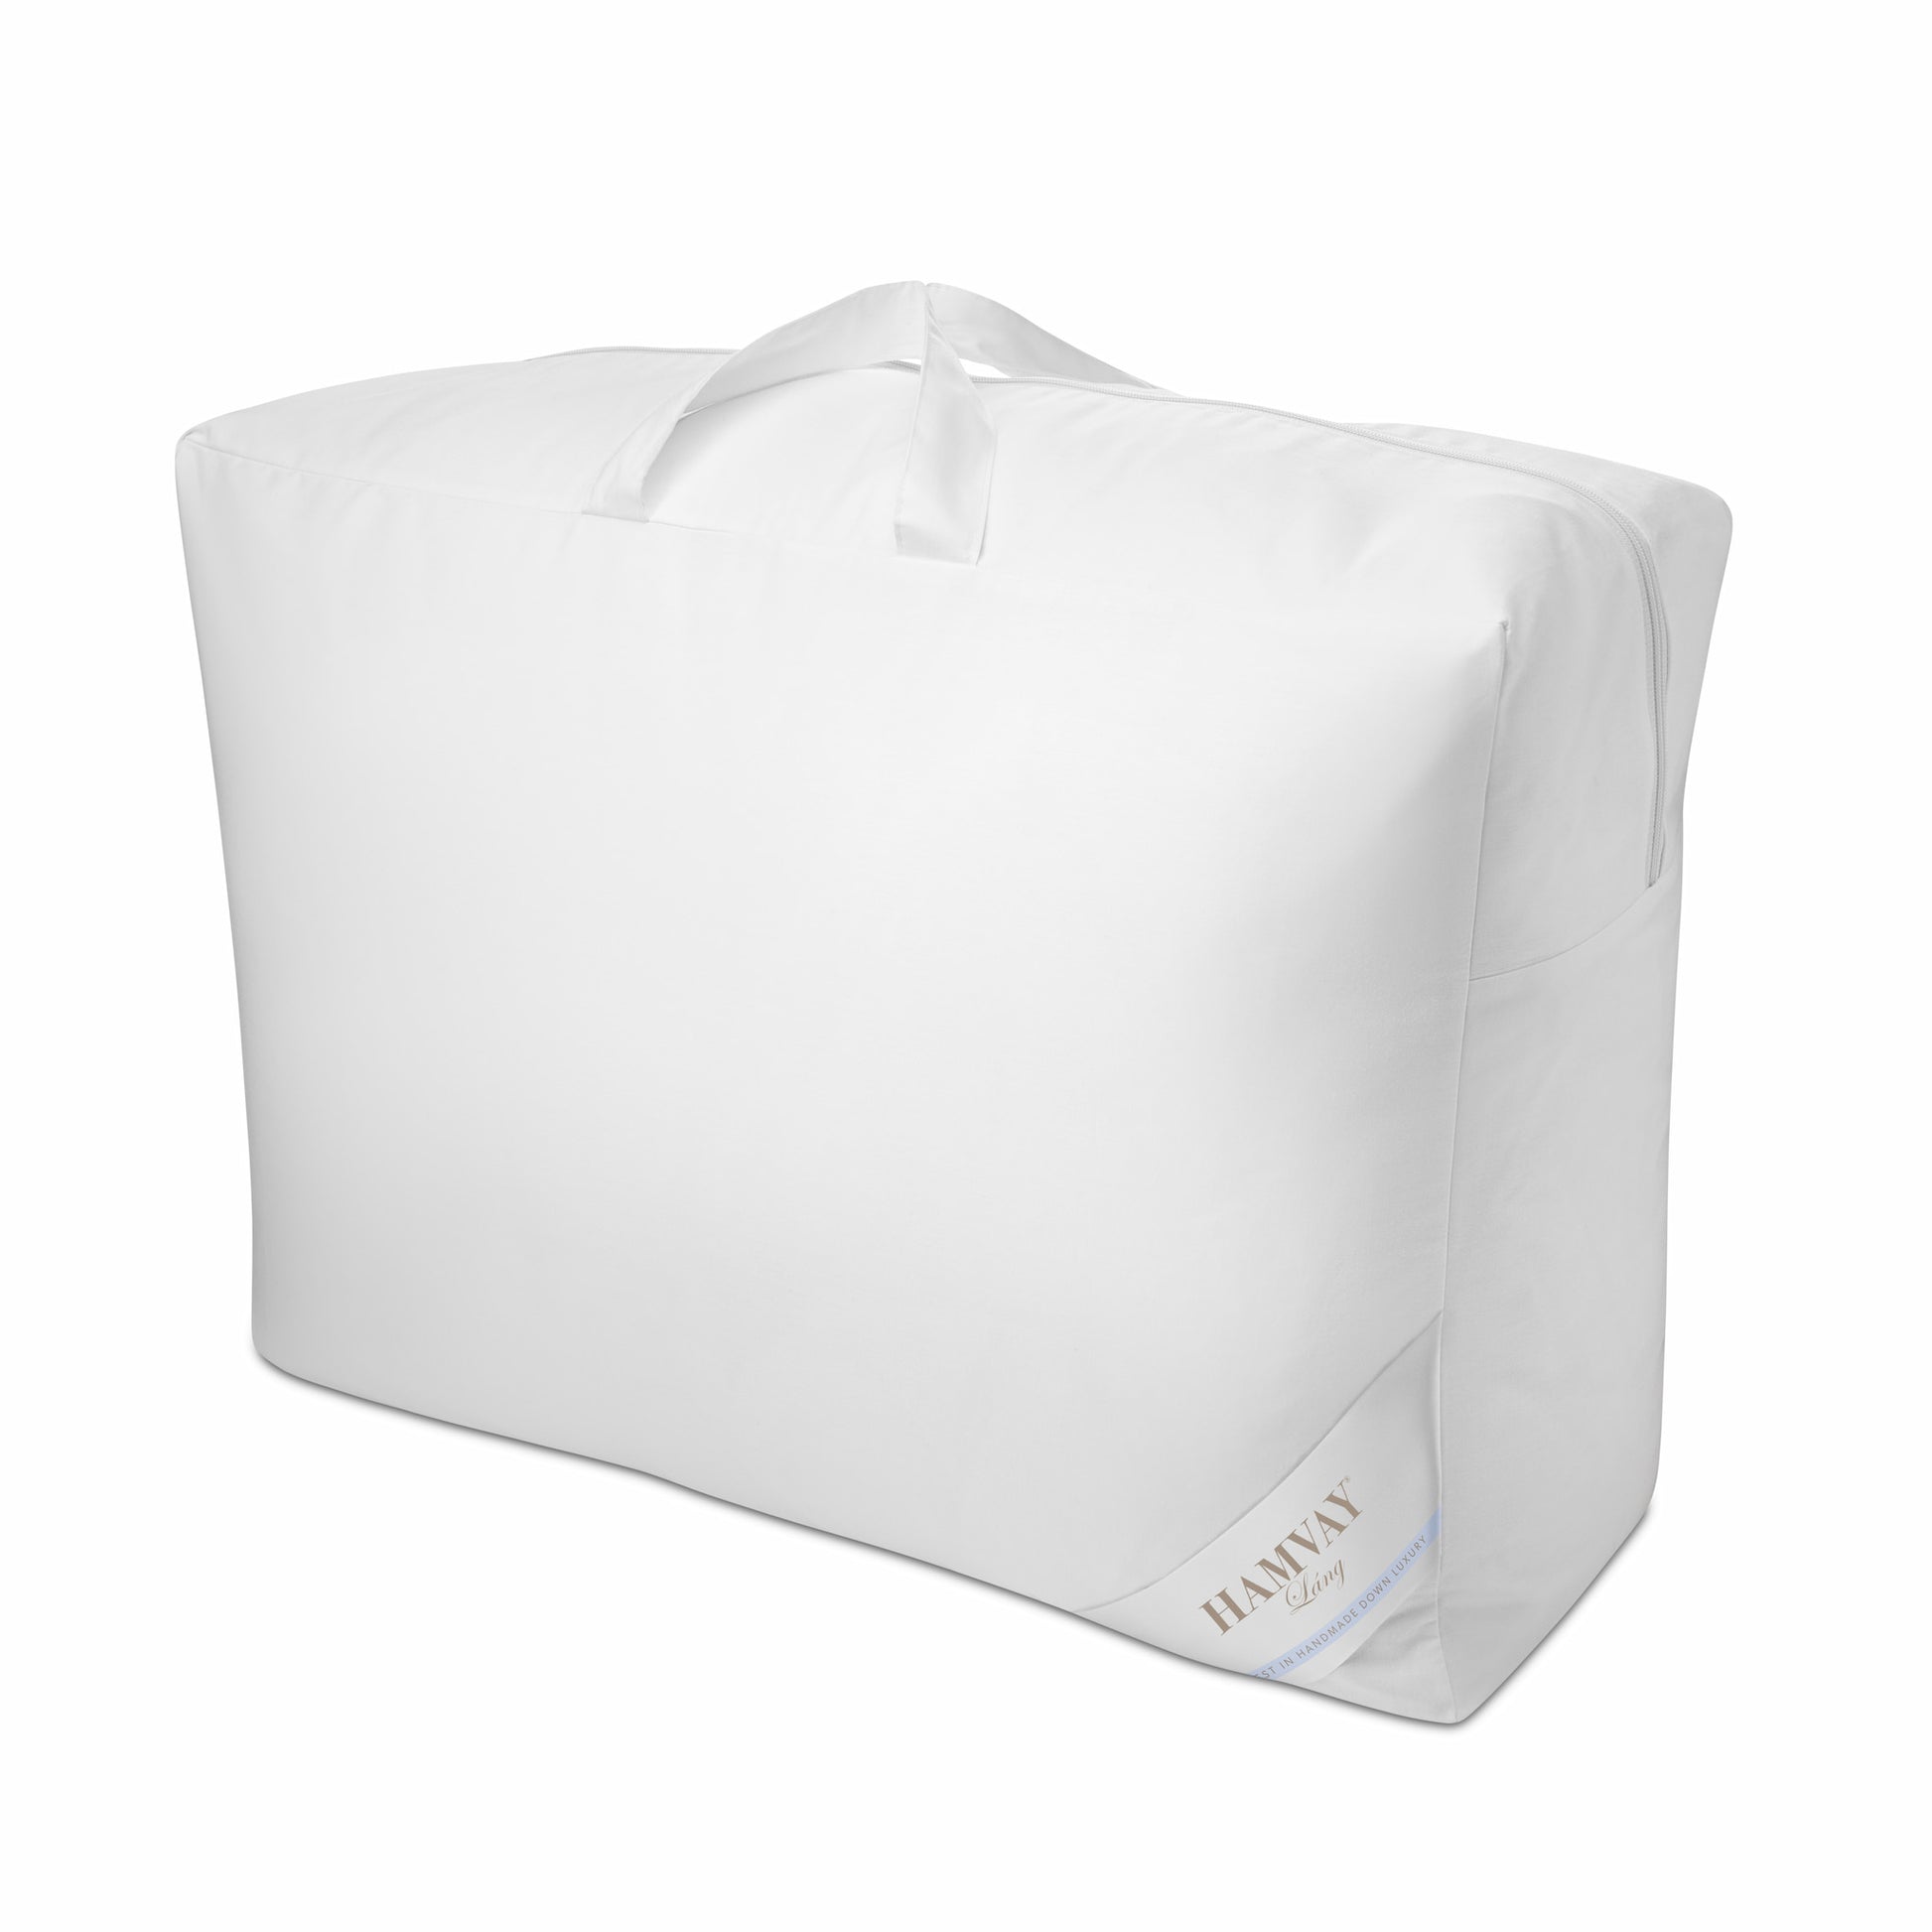 Hamvay-Láng white comforter bag